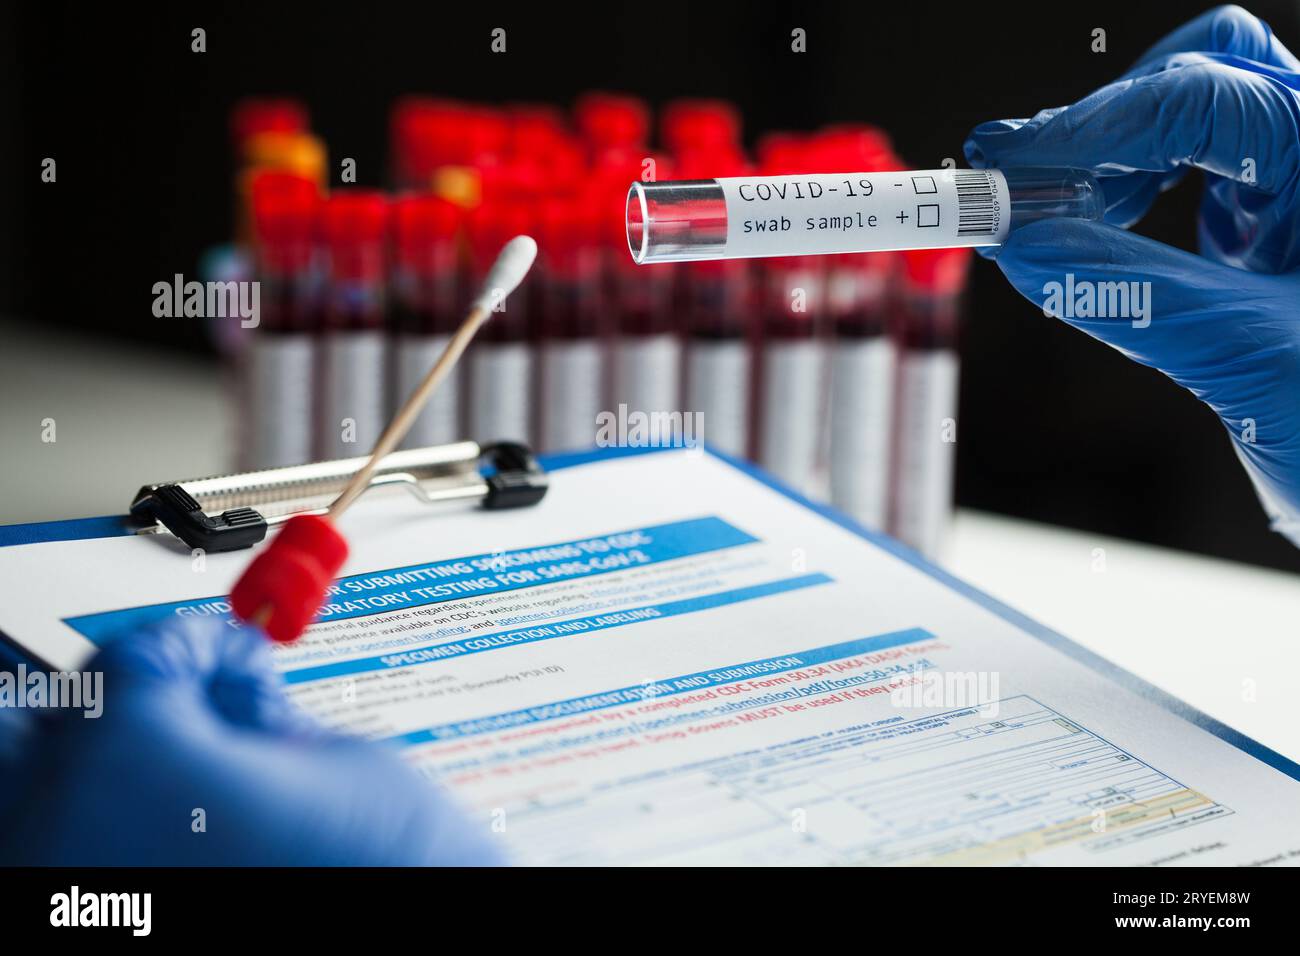 Technicien de laboratoire tenant le kit de collecte d'écouvillons, matériel de collecte d'échantillons COVID-19 coronavirus, ADN na Banque D'Images